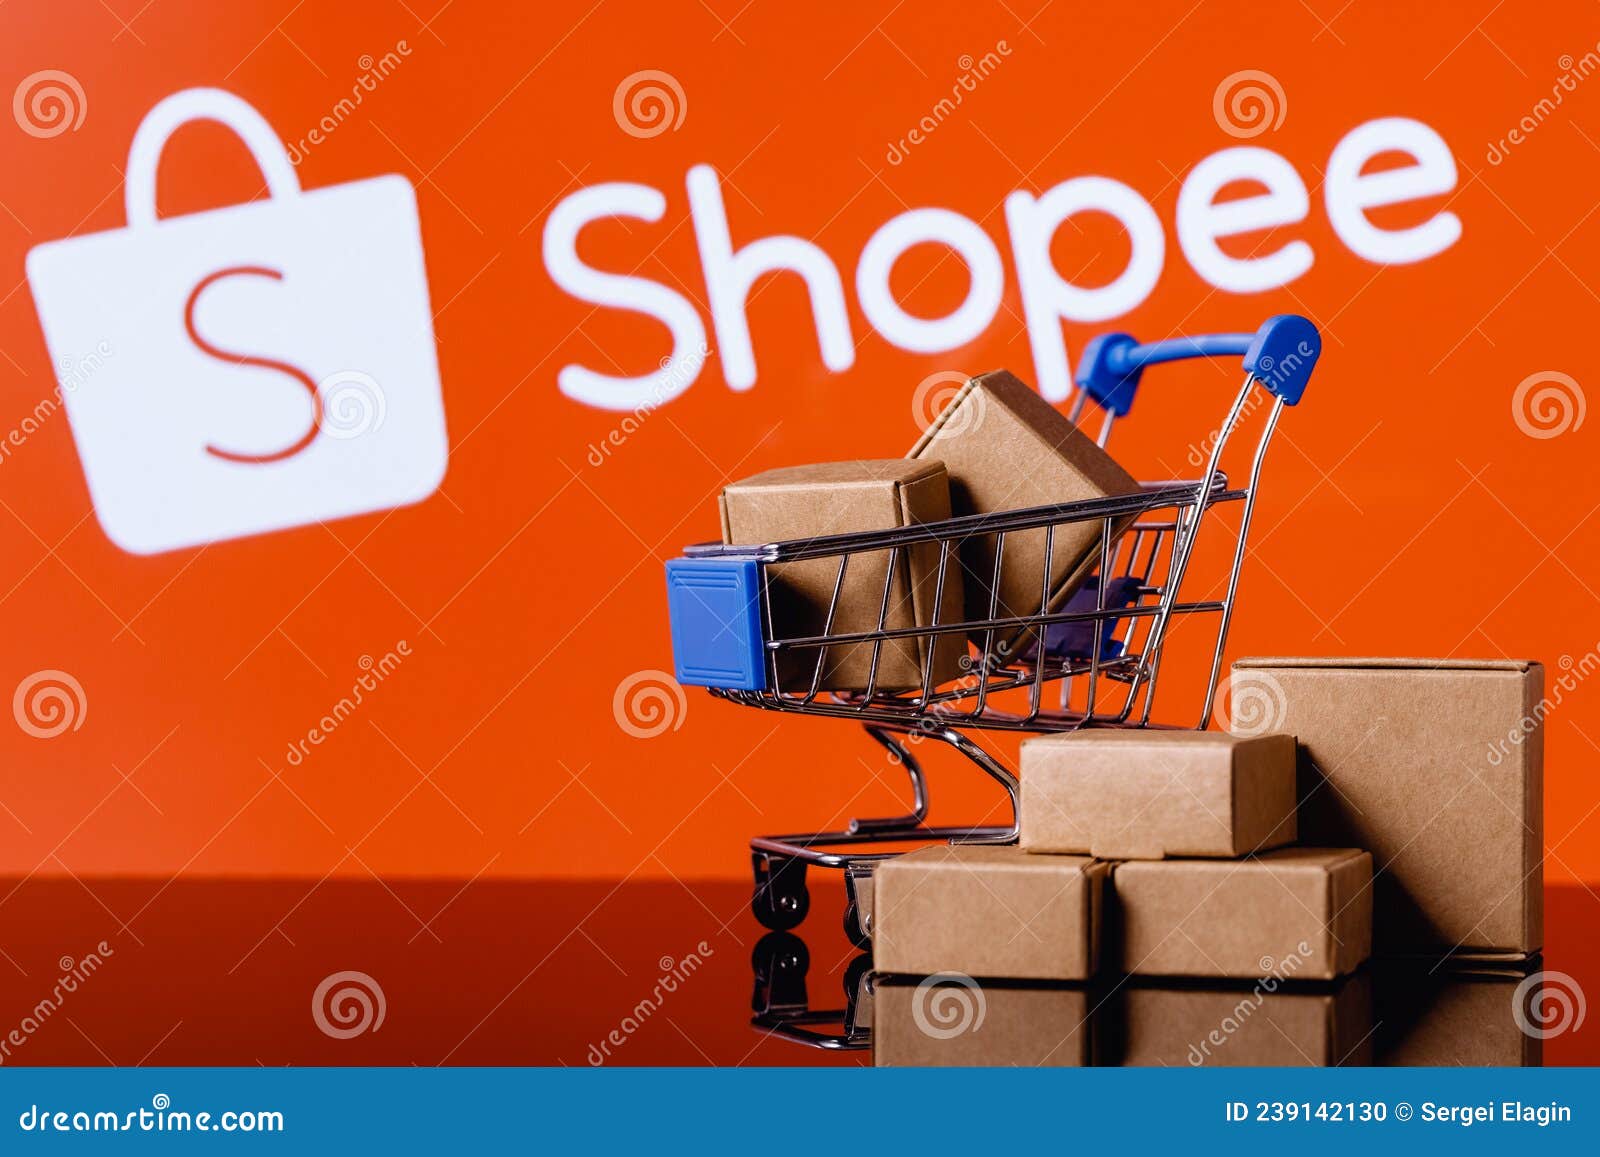 Hãy cùng đến với Shopee - nền tảng mua sắm trực tuyến hàng đầu Việt Nam, để khám phá chi tiết logo của chúng tôi. Với những đường nét mềm mại và hiện đại, Shopee truyền tải sự tiện lợi và hấp dẫn đến cho tất cả khách hàng của mình.